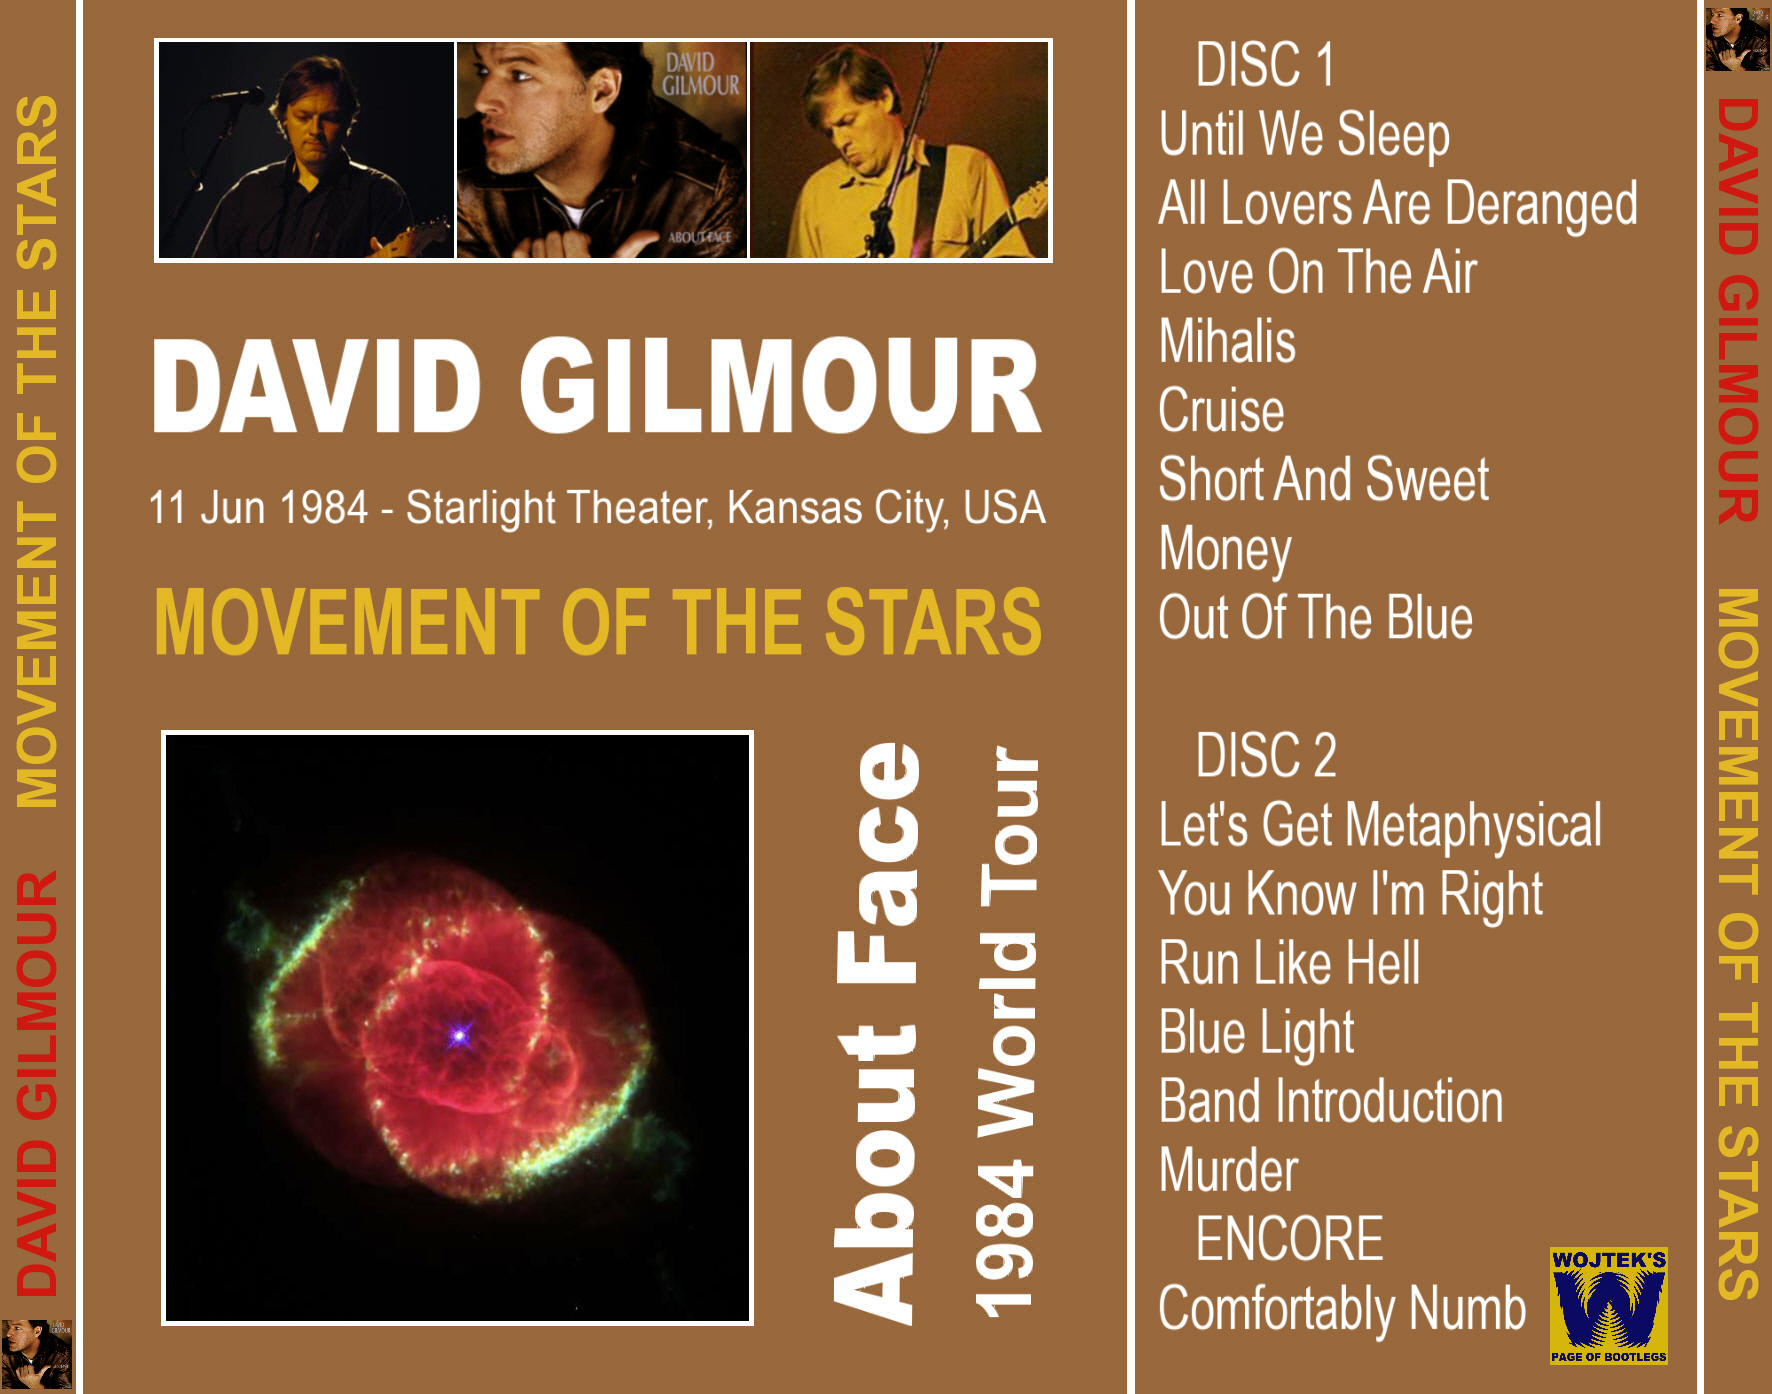 DavidGilmour1984-06-11StarlightTheaterKansasCityMO (1).jpg